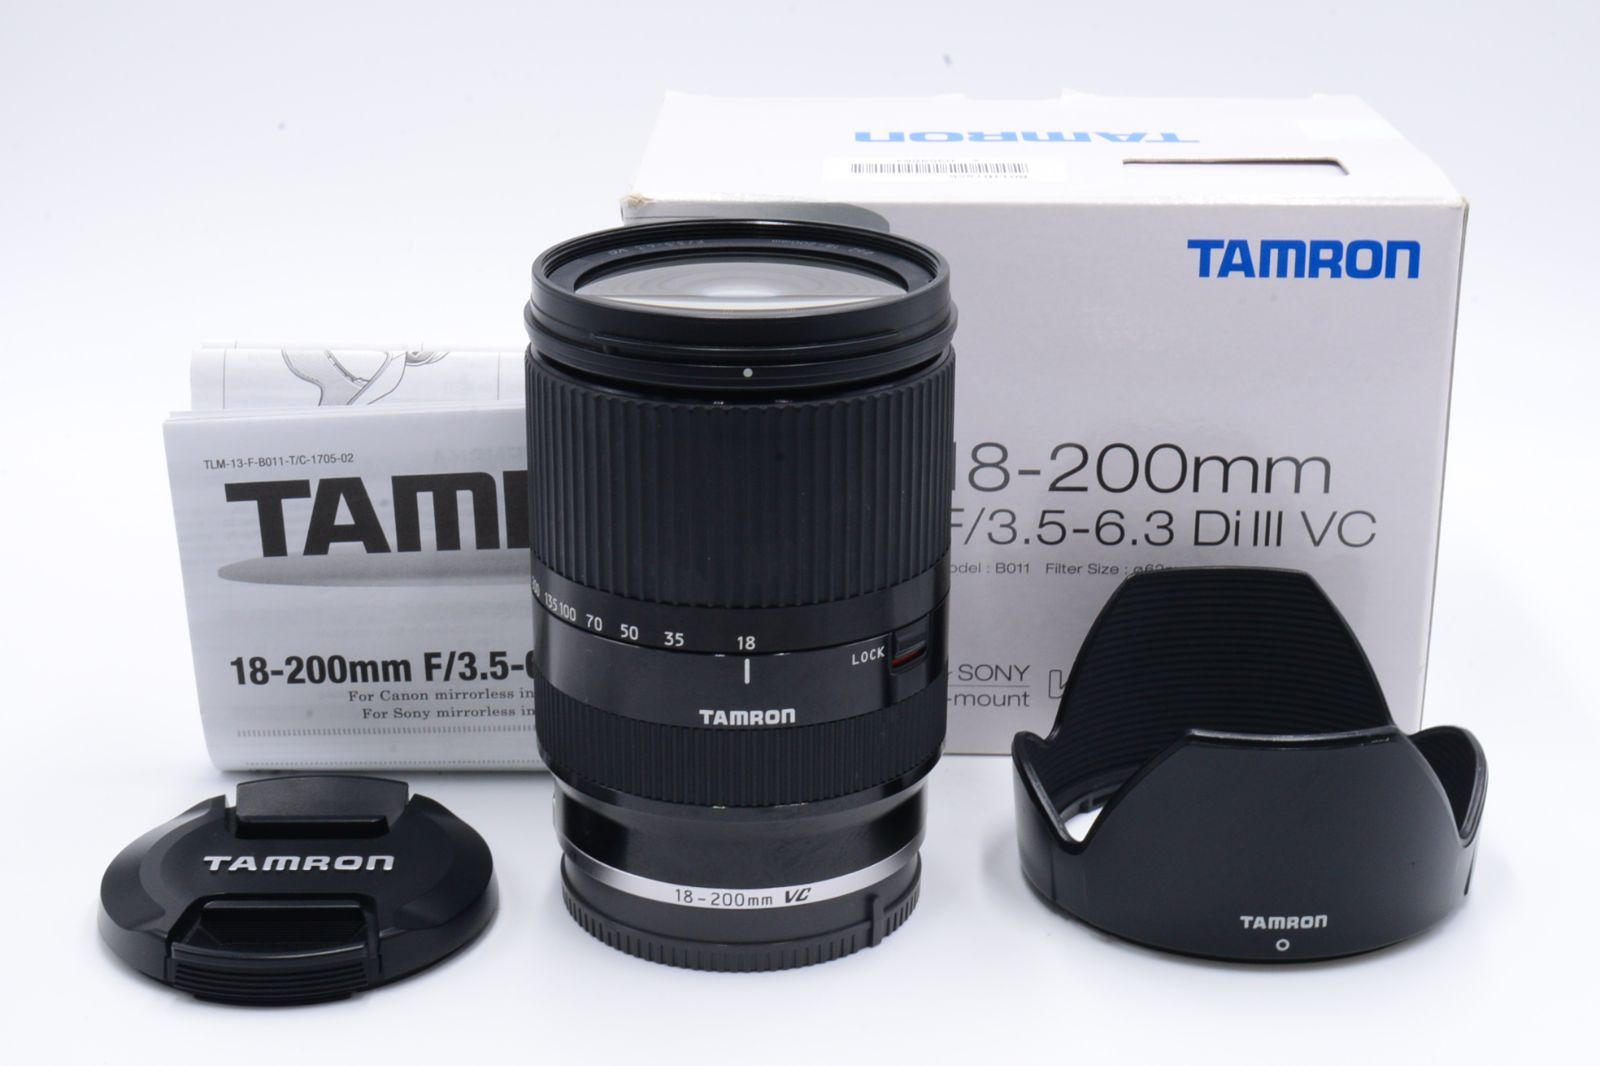 タムロン TAMRON 高倍率ズームレンズ 18-200mm F3.5-6.3 DiIII VC